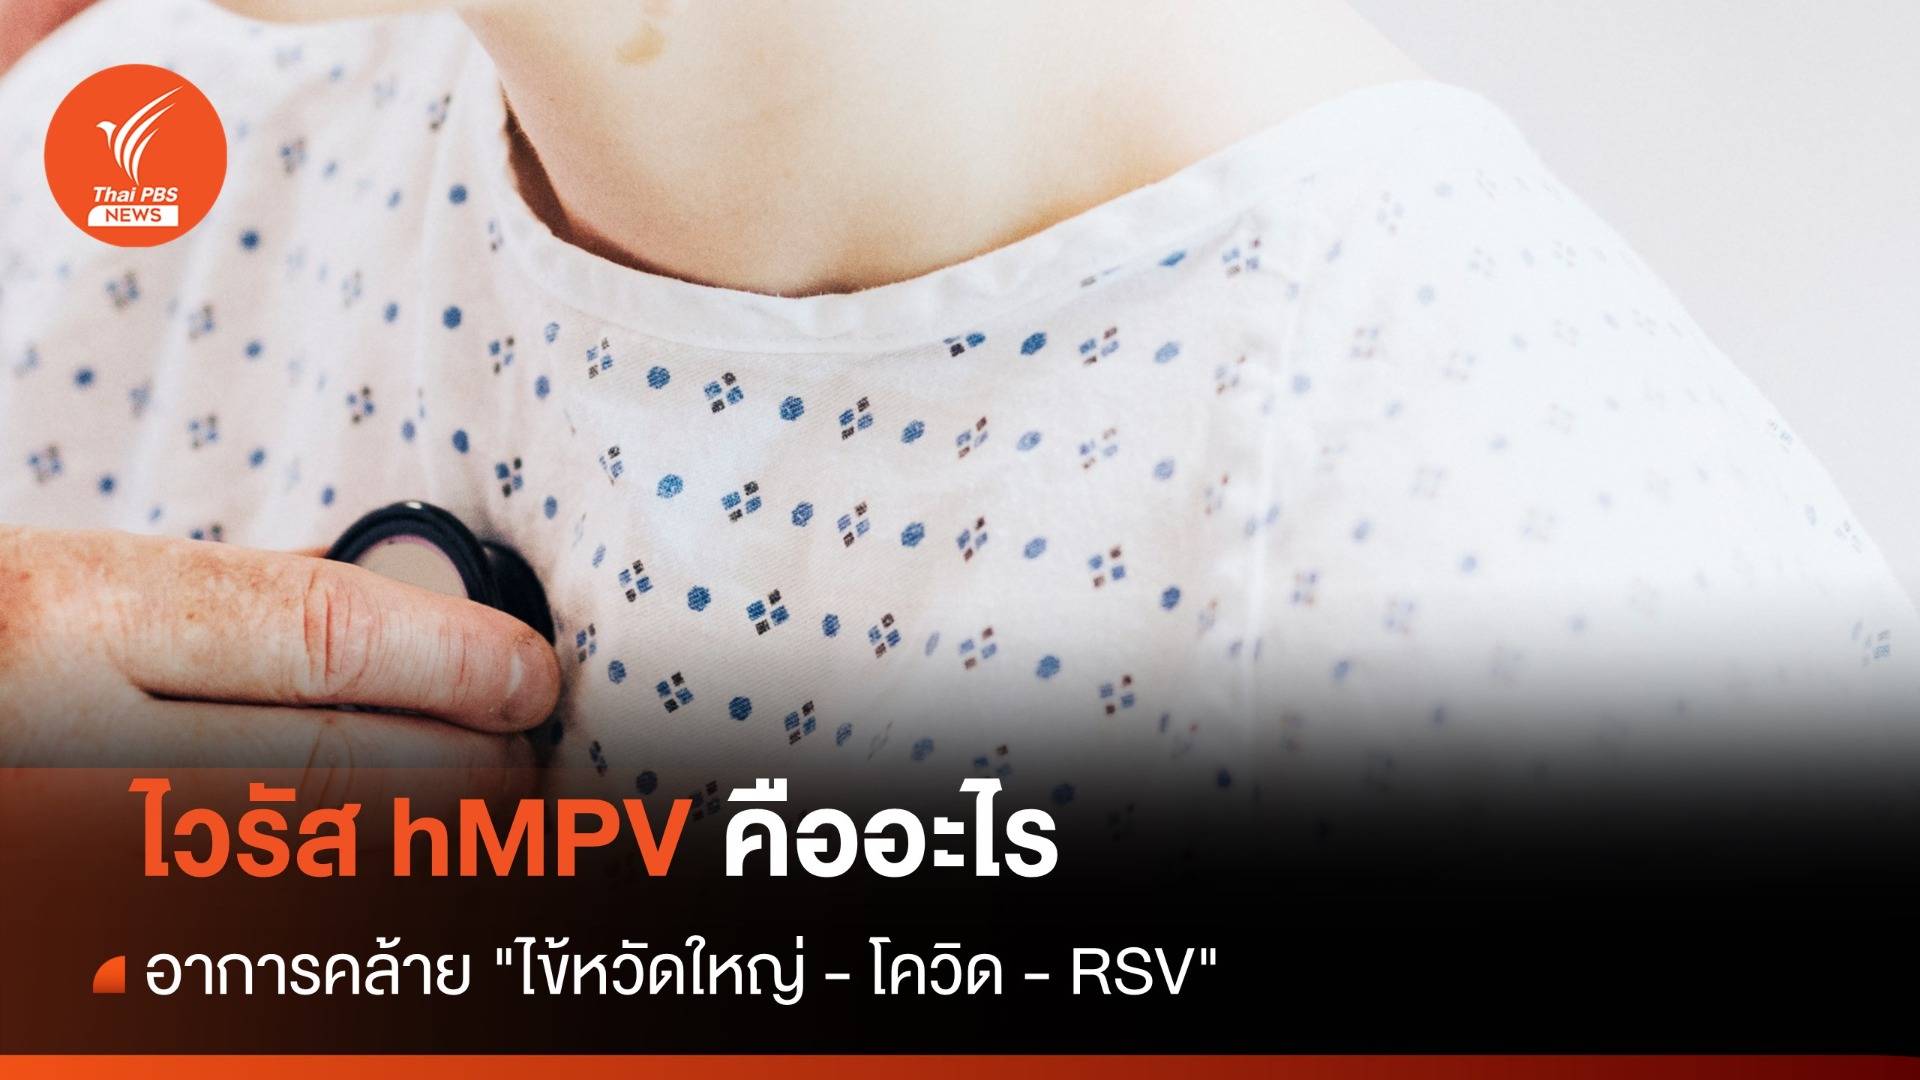 รู้จักไวรัส "hMPV" อาการคล้าย "ไข้หวัดใหญ่ - โควิด - RSV"